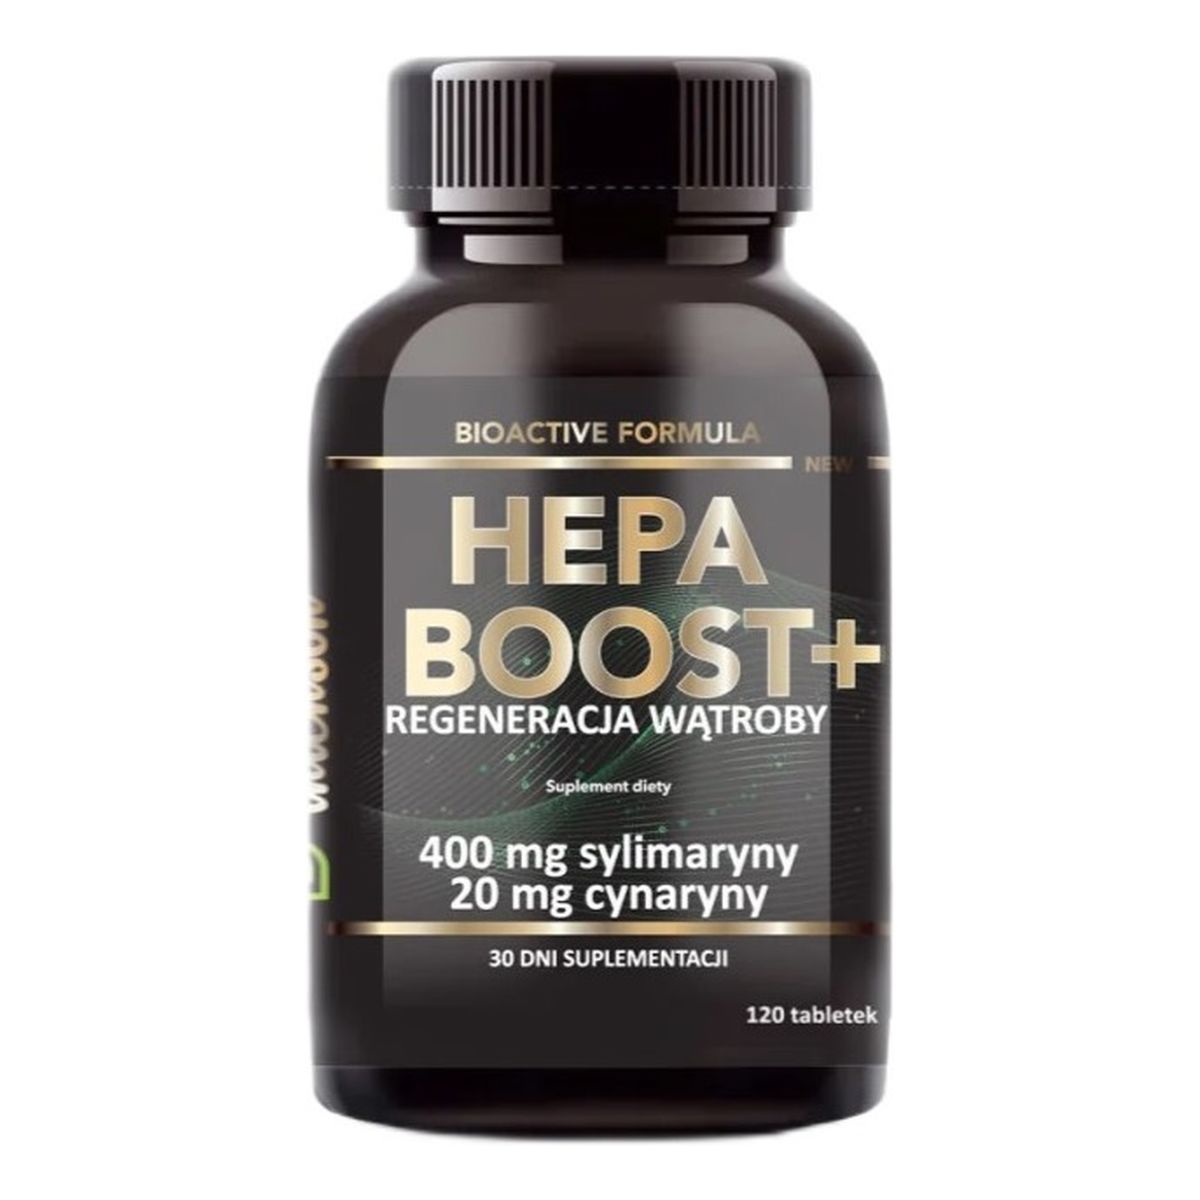 Intenson Hepa boost+ regeneracja wątroby suplement diety 120 tabletek